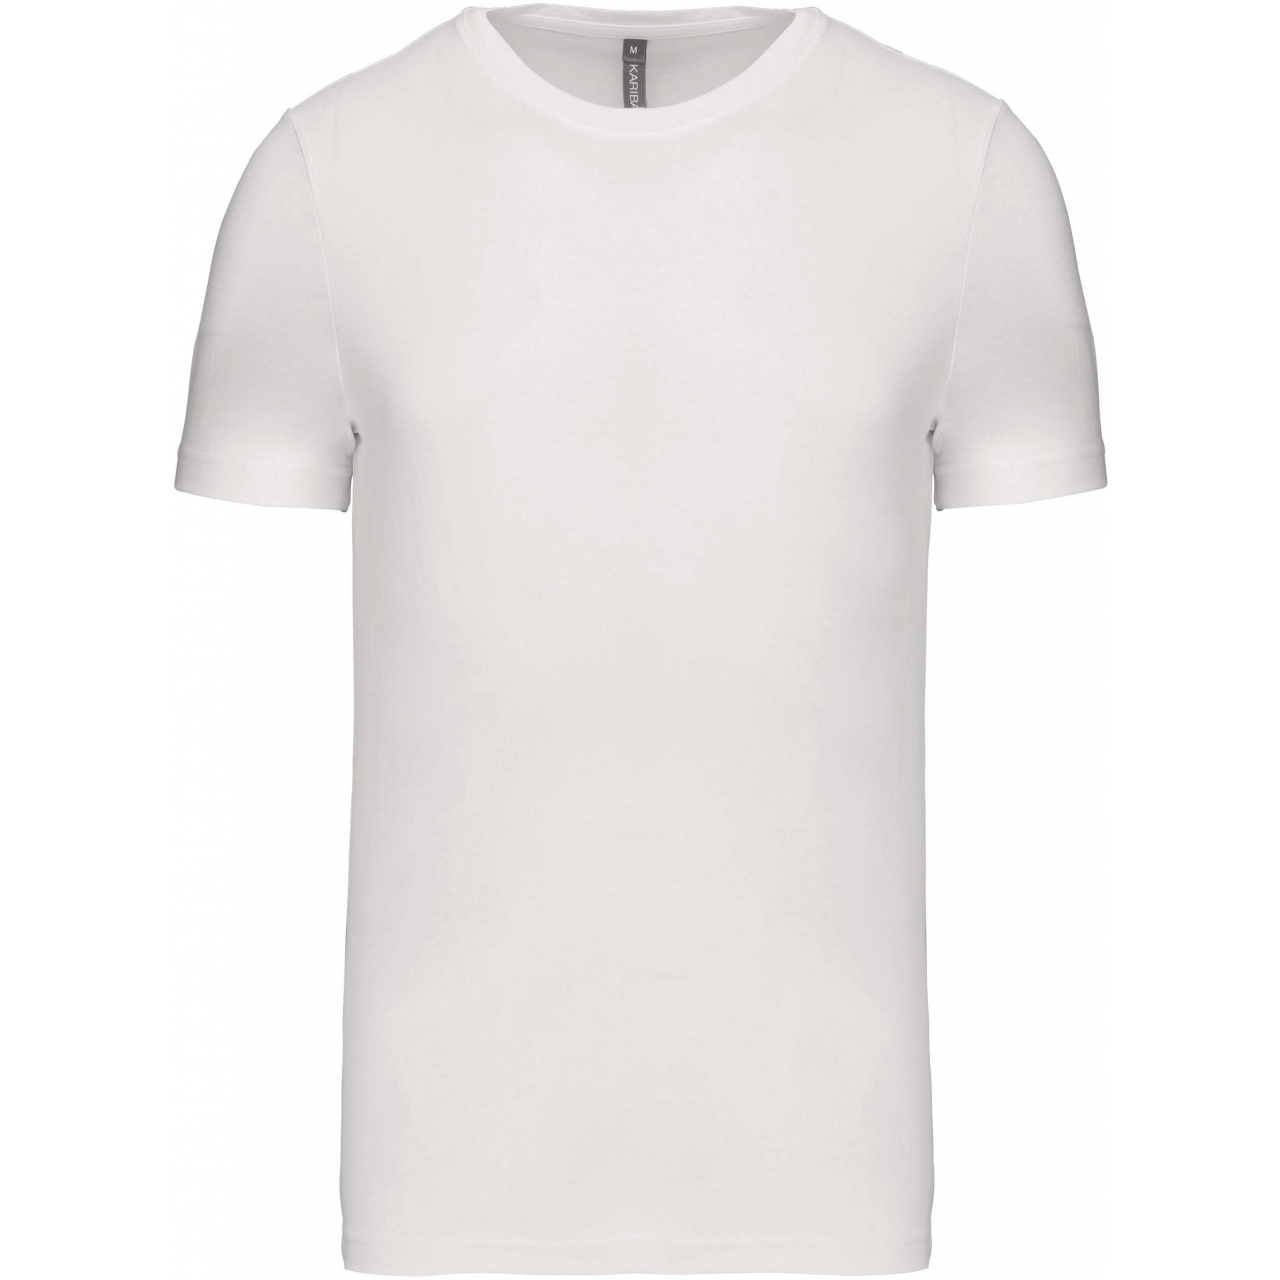 Pánské tričko Kariban krátký rukáv - bílé, XXL